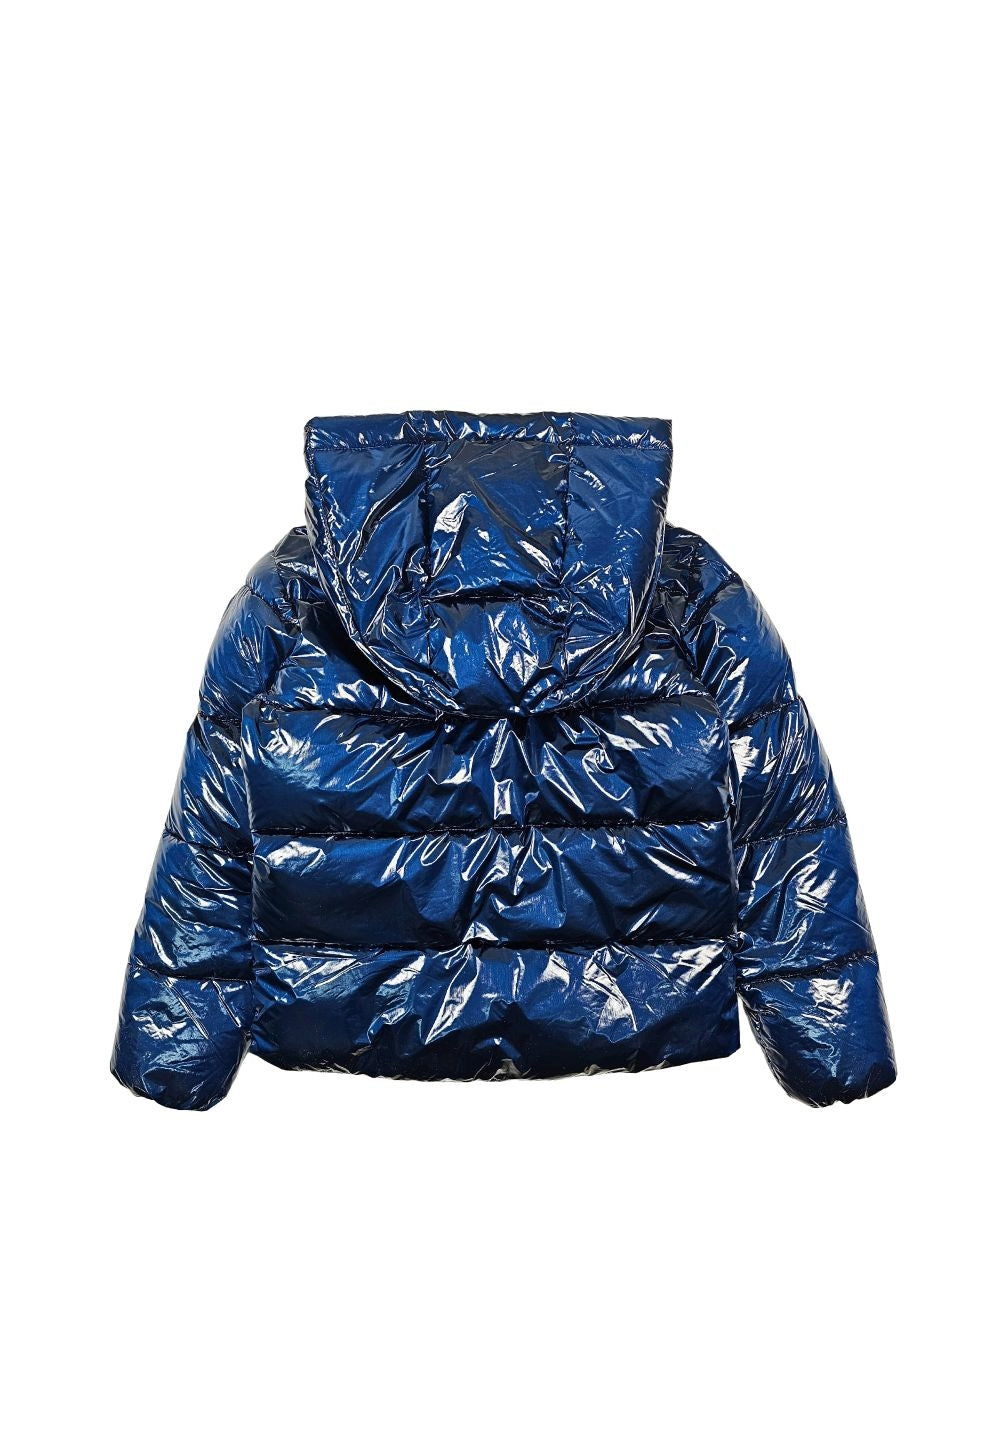 Blue jacket for girls